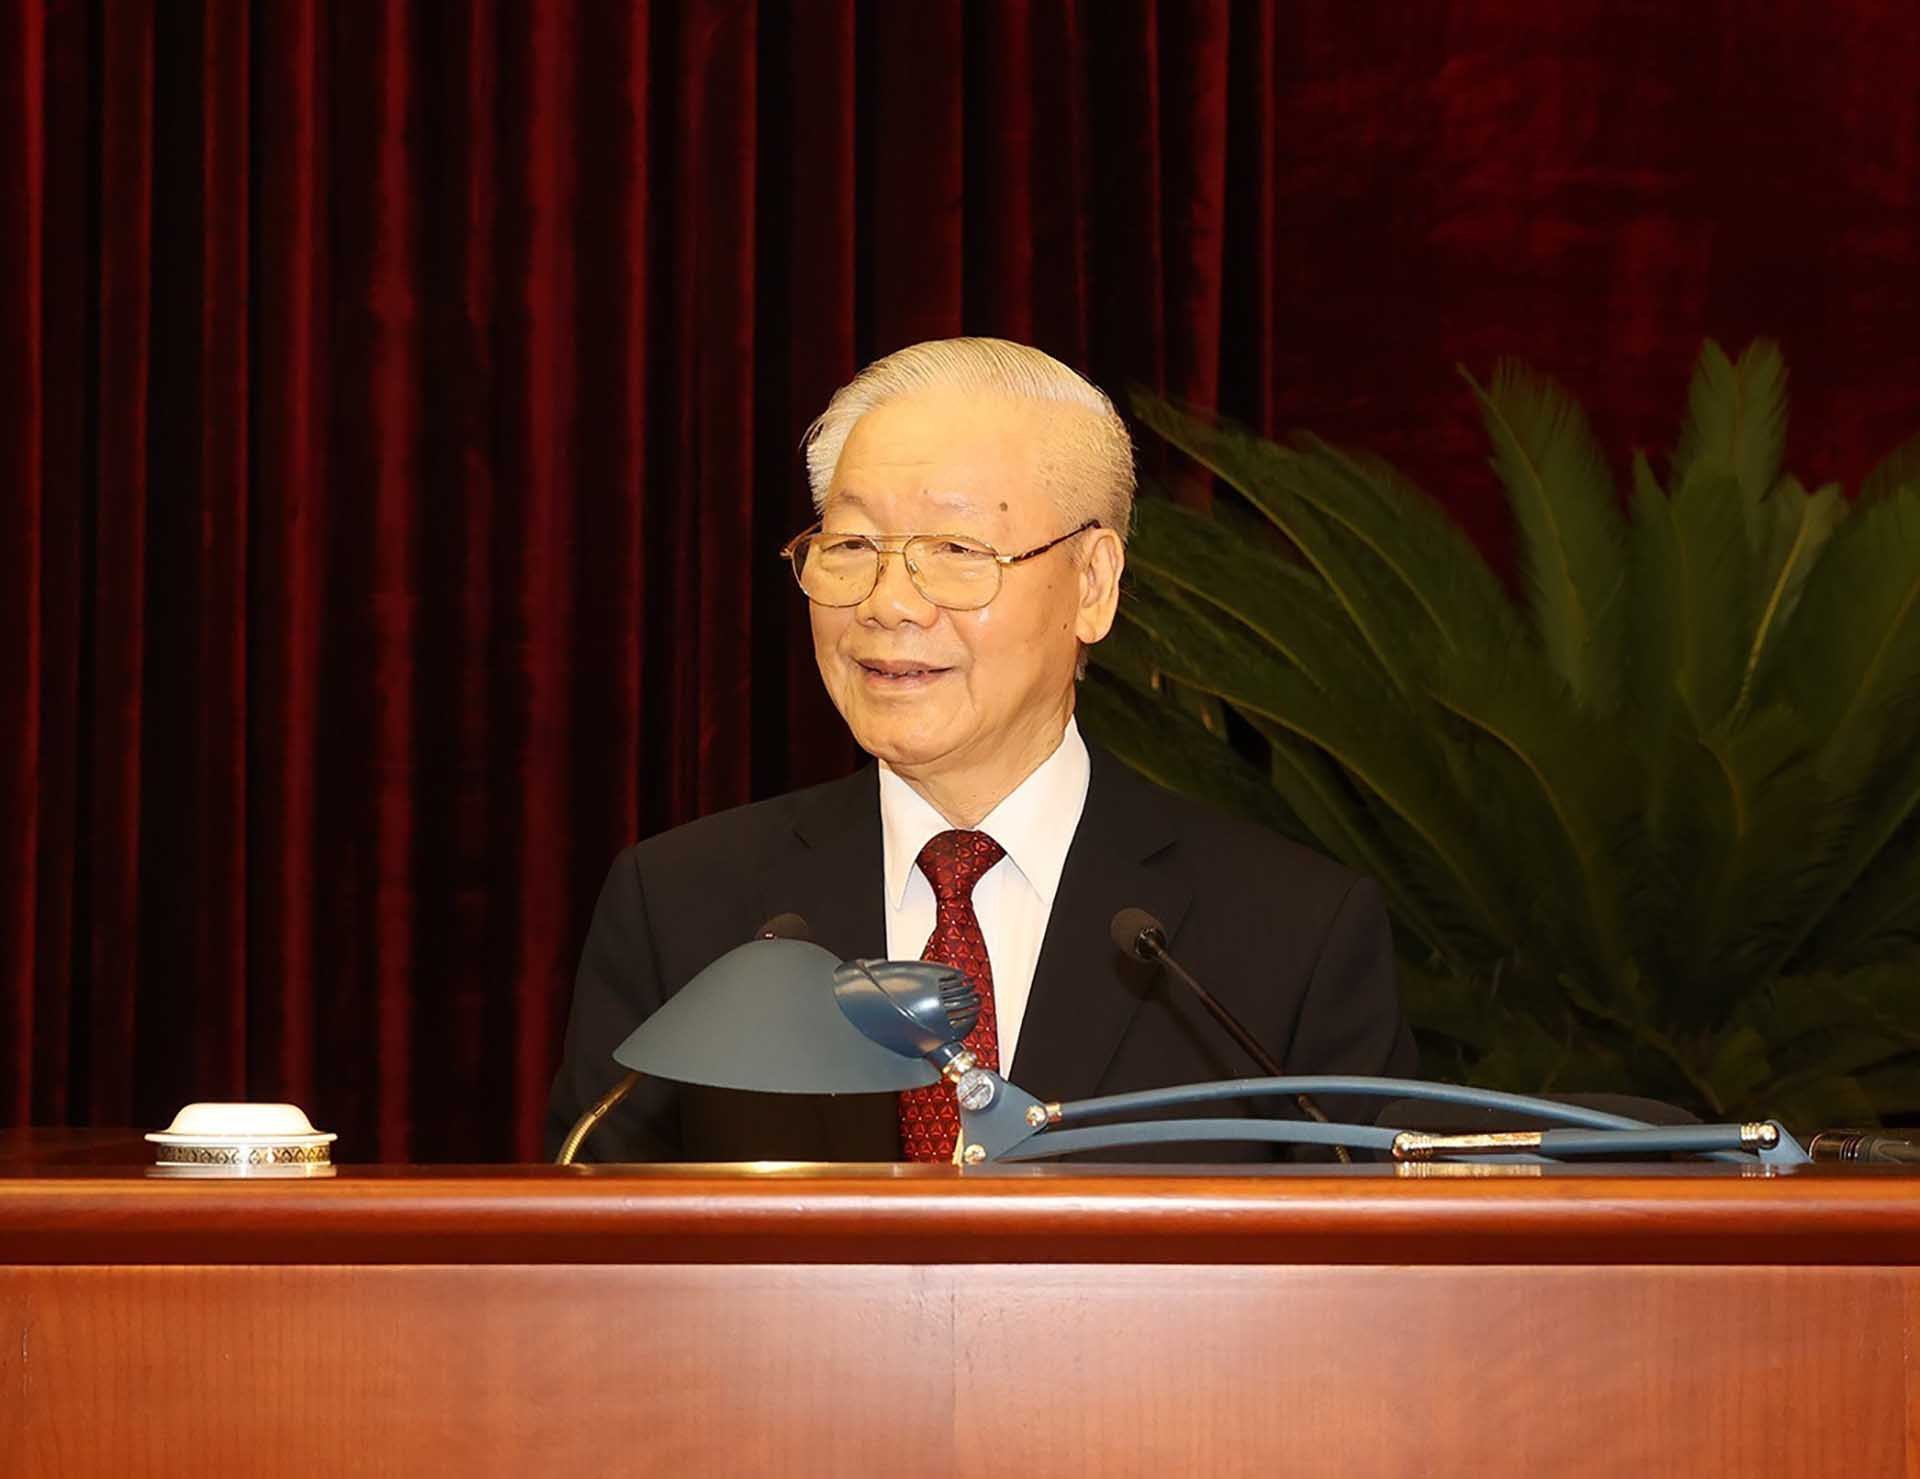 Tổng Bí thư Nguyễn Phú Trọng phát biểu bế mạc Hội nghị. (Nguồn: TTXVN)